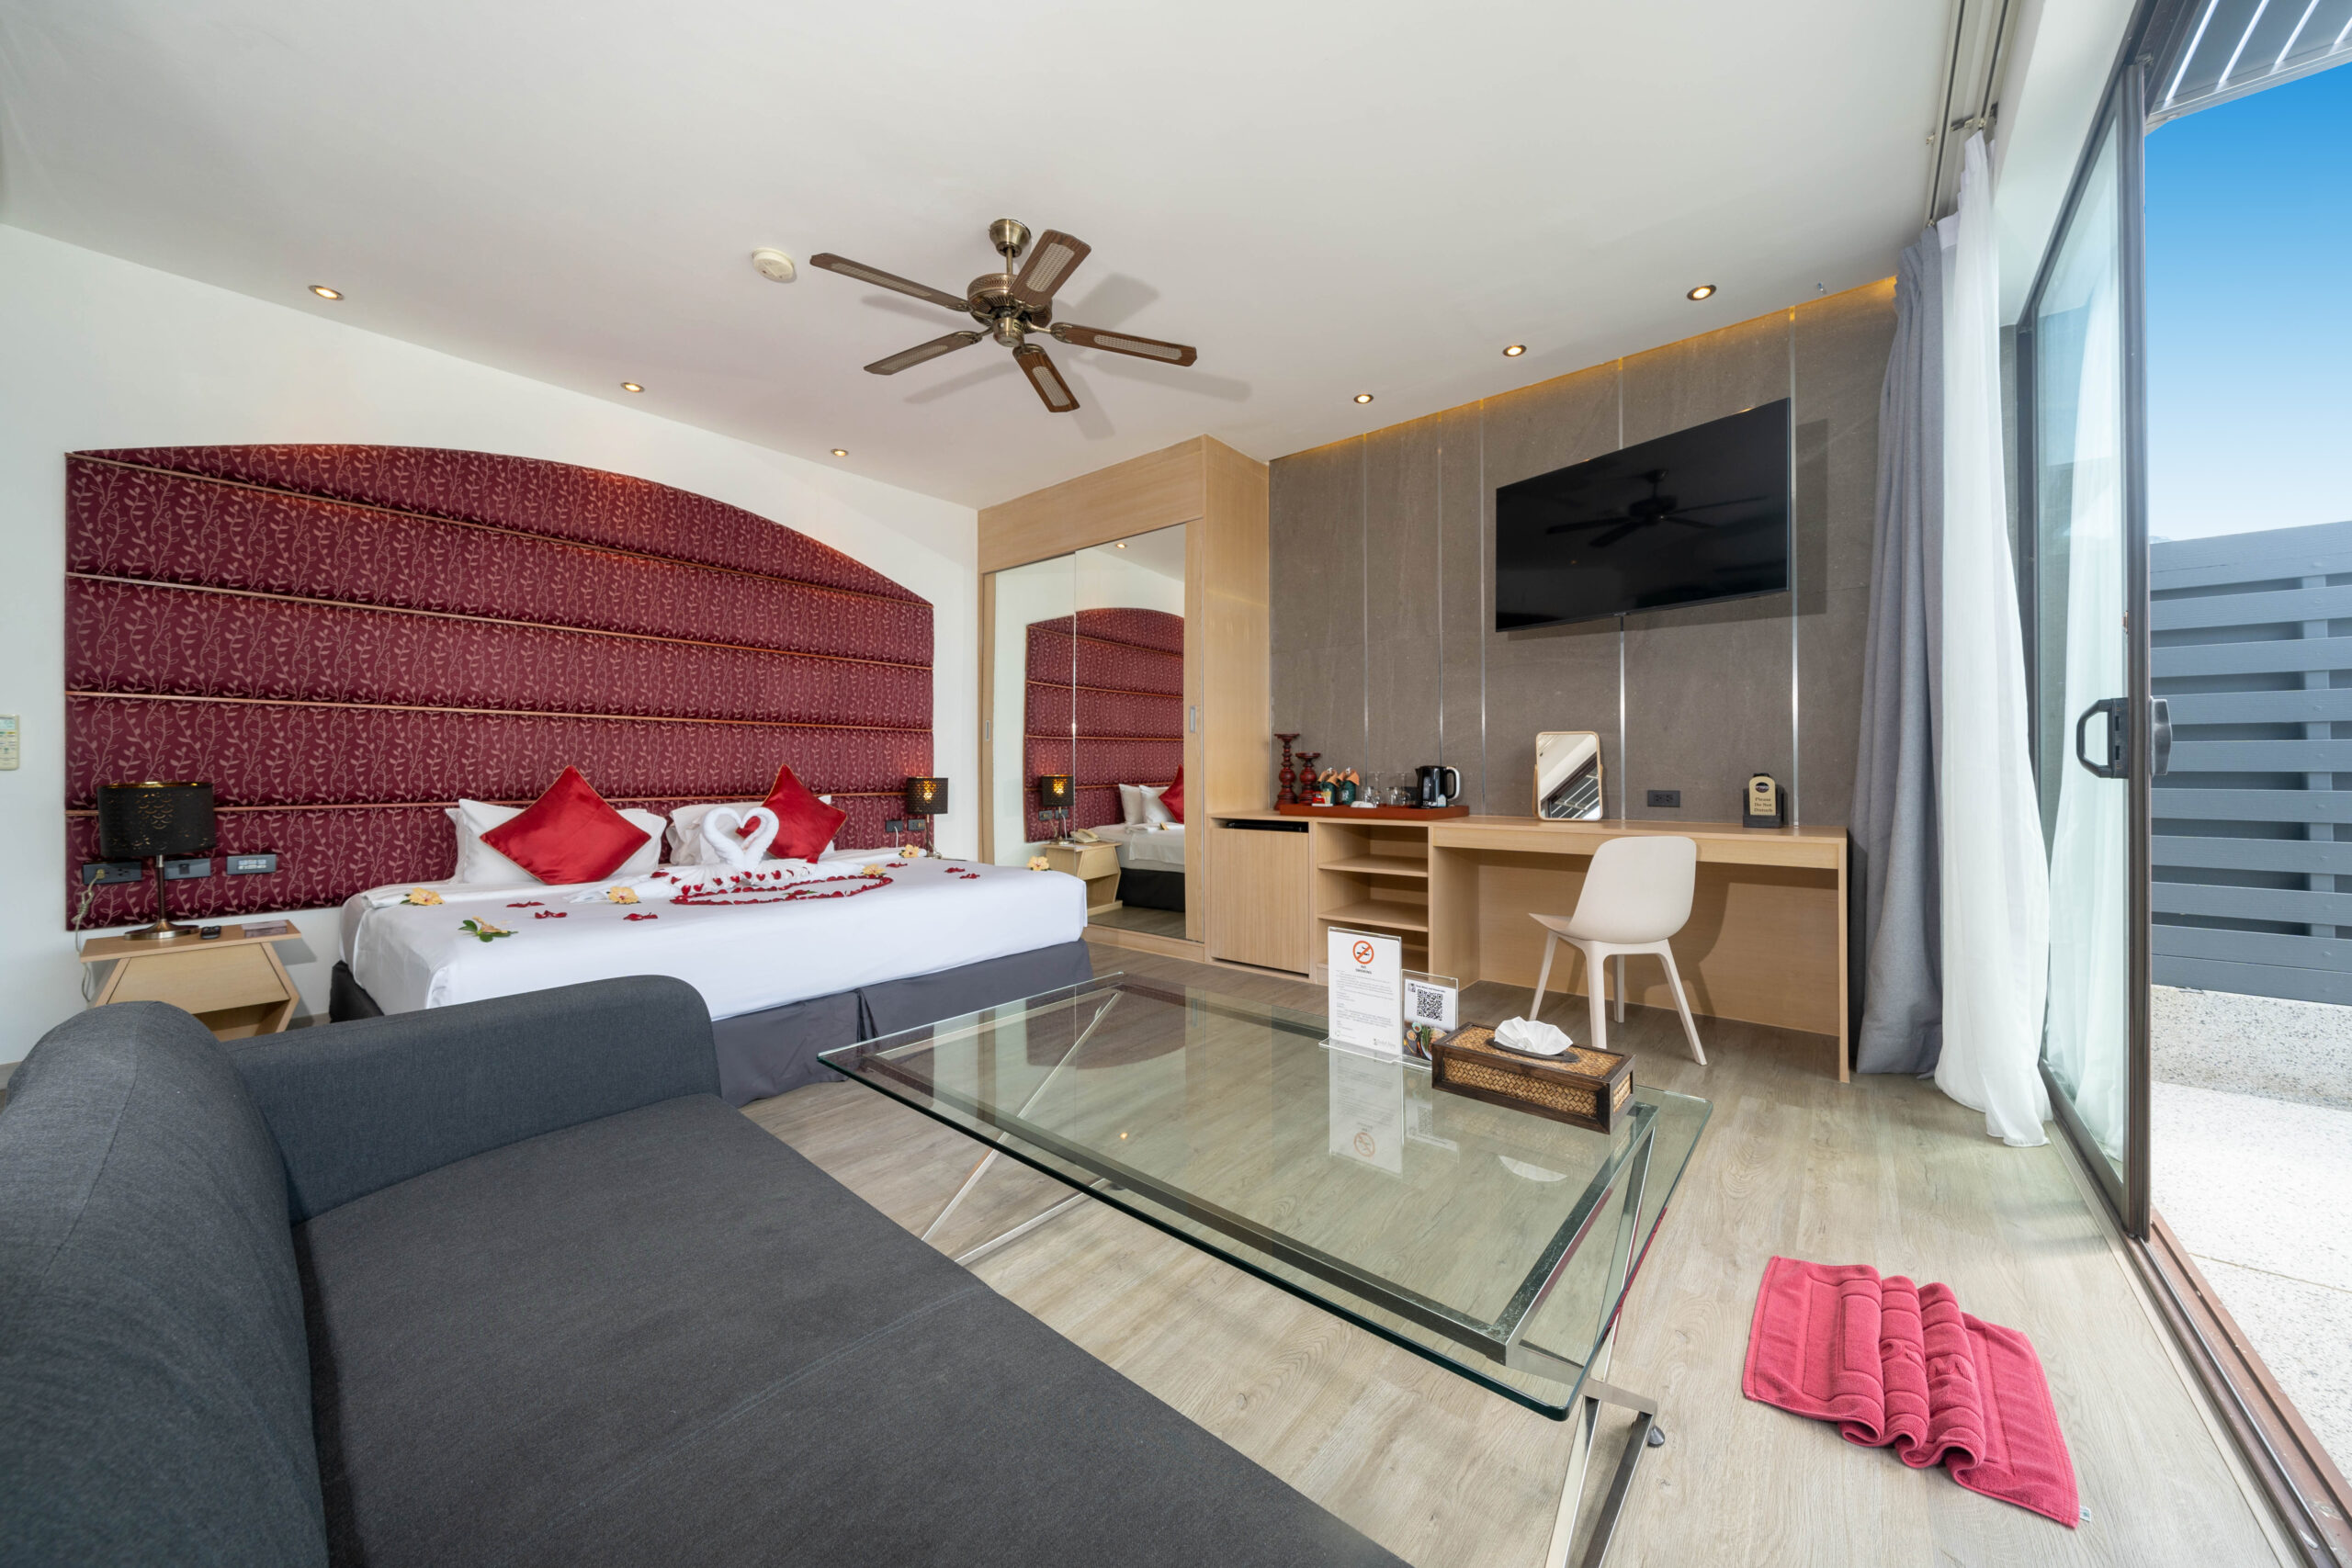 IndoChine Resort & Villas - 